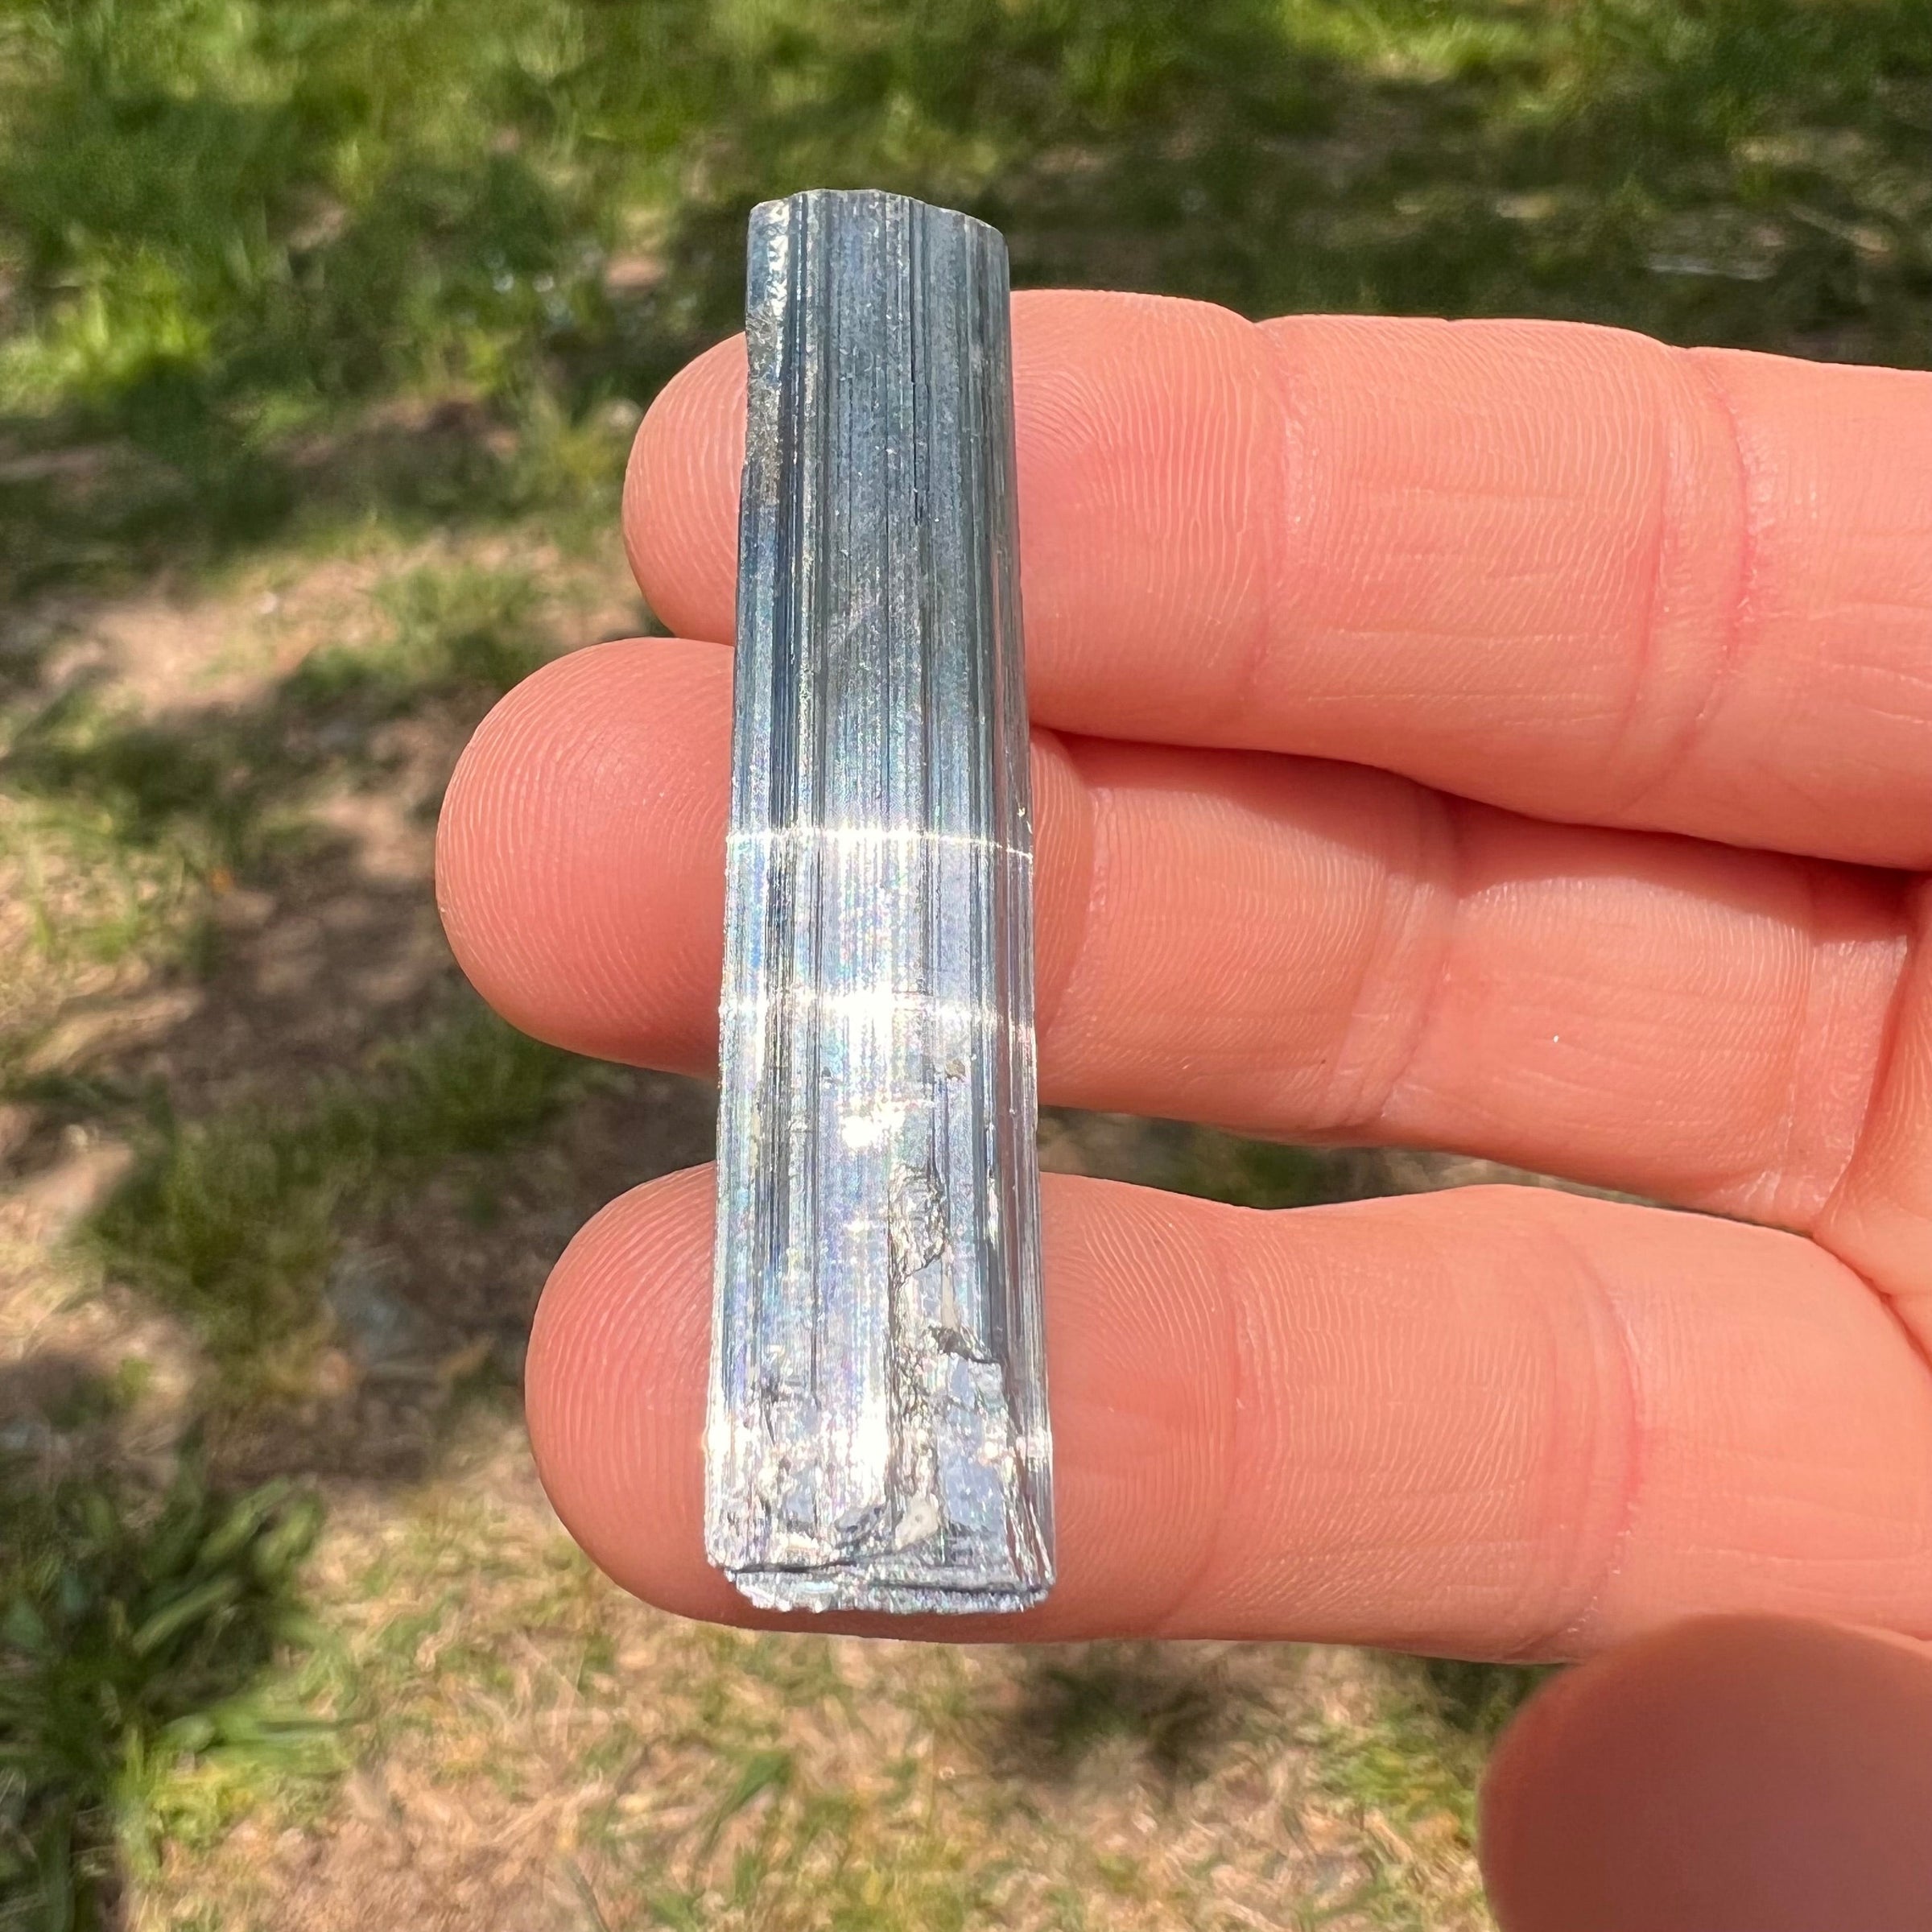 Stibnite Crystal #11-Moldavite Life